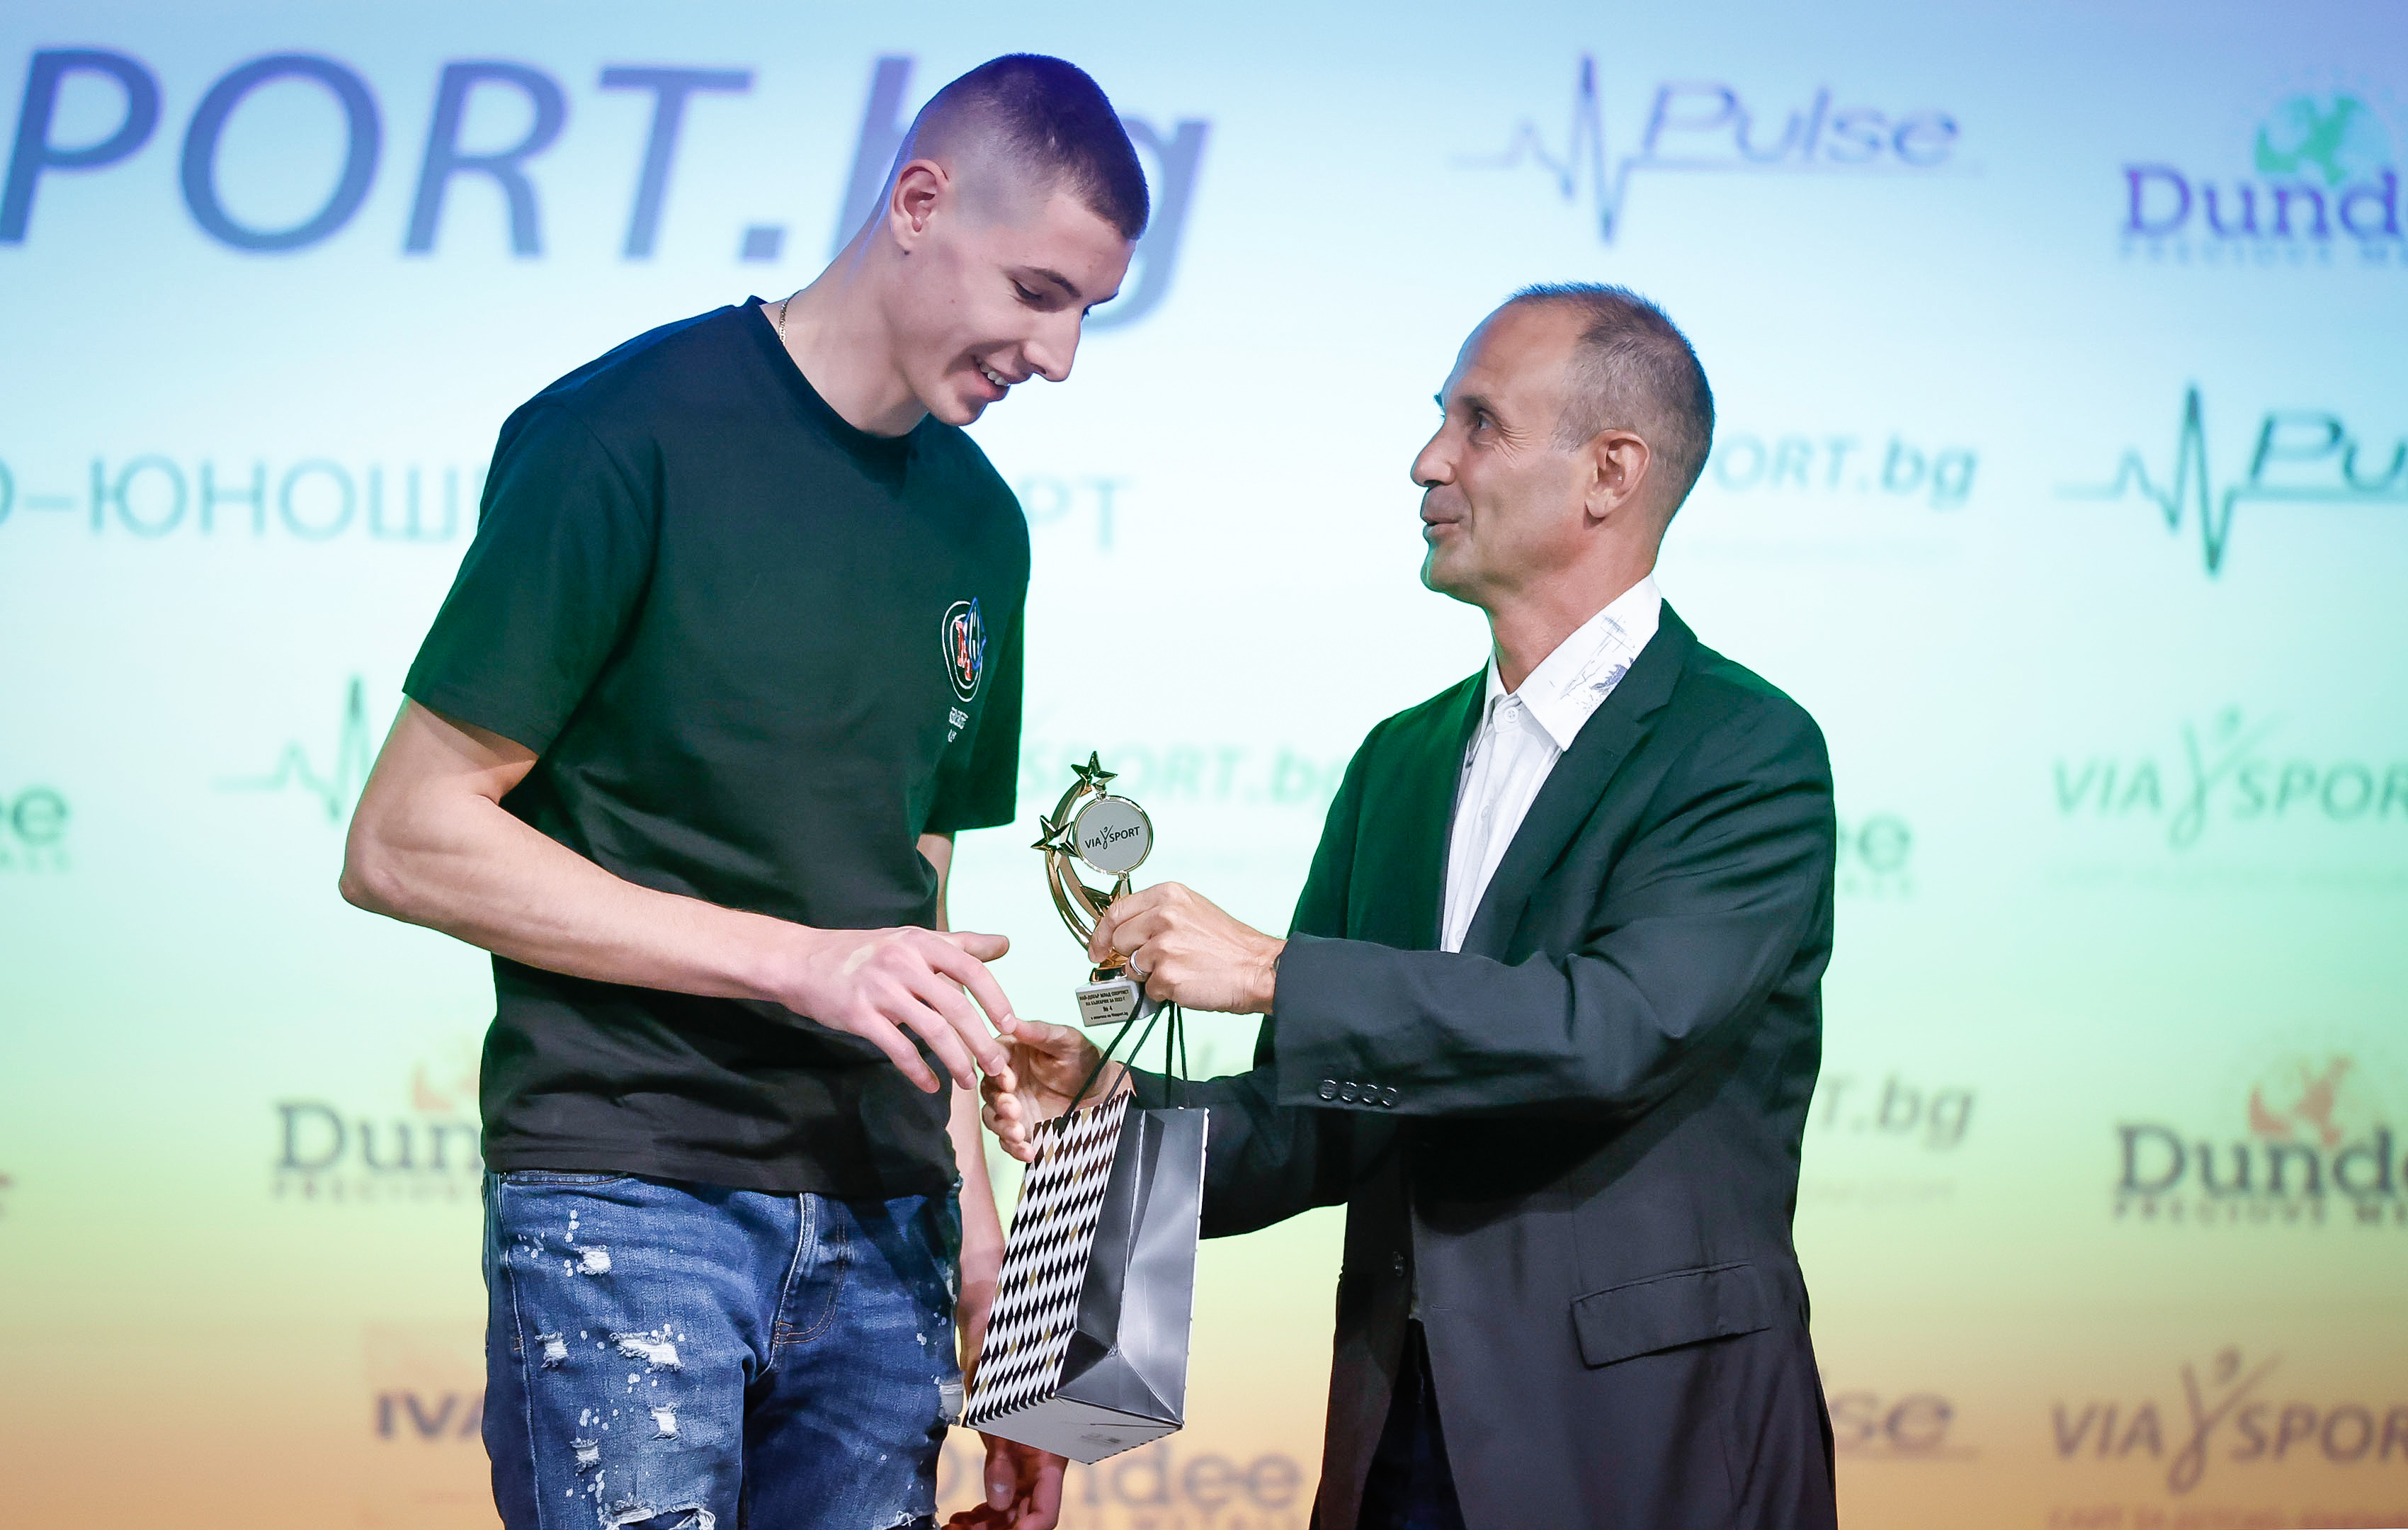 Петър Мицин Най добър млад спортист церемония награждаване